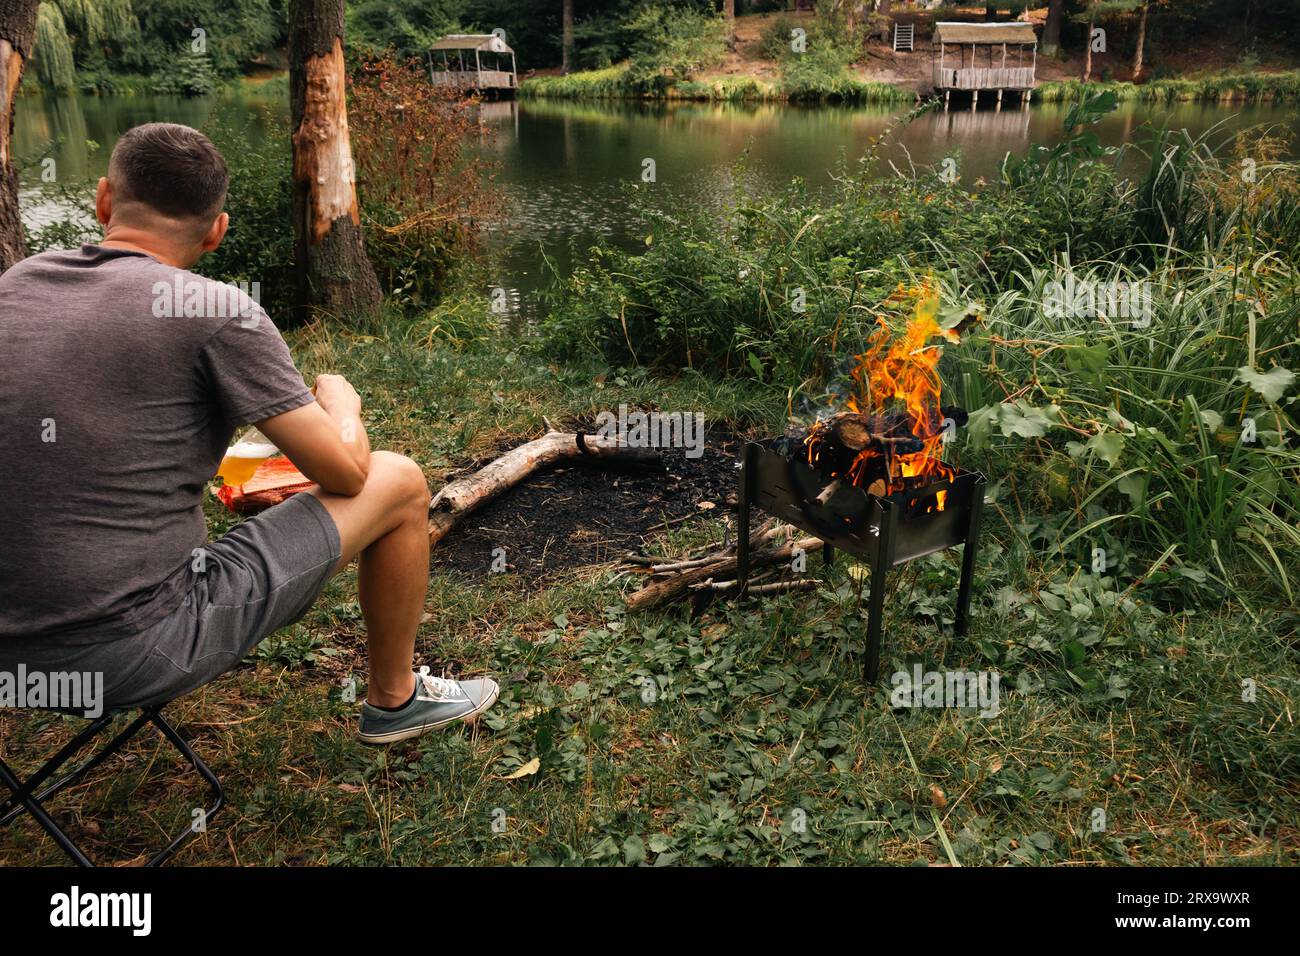 Mann, der im Wald in der Nähe des Lagerfeuers sitzt. Mann auf einem Herbstpicknick. Einsamer Mann am Flussufer mit Lagerfeuer. Tourismus im Wald. Touristen in der Nähe des Kamins am Teichufer Stockfoto